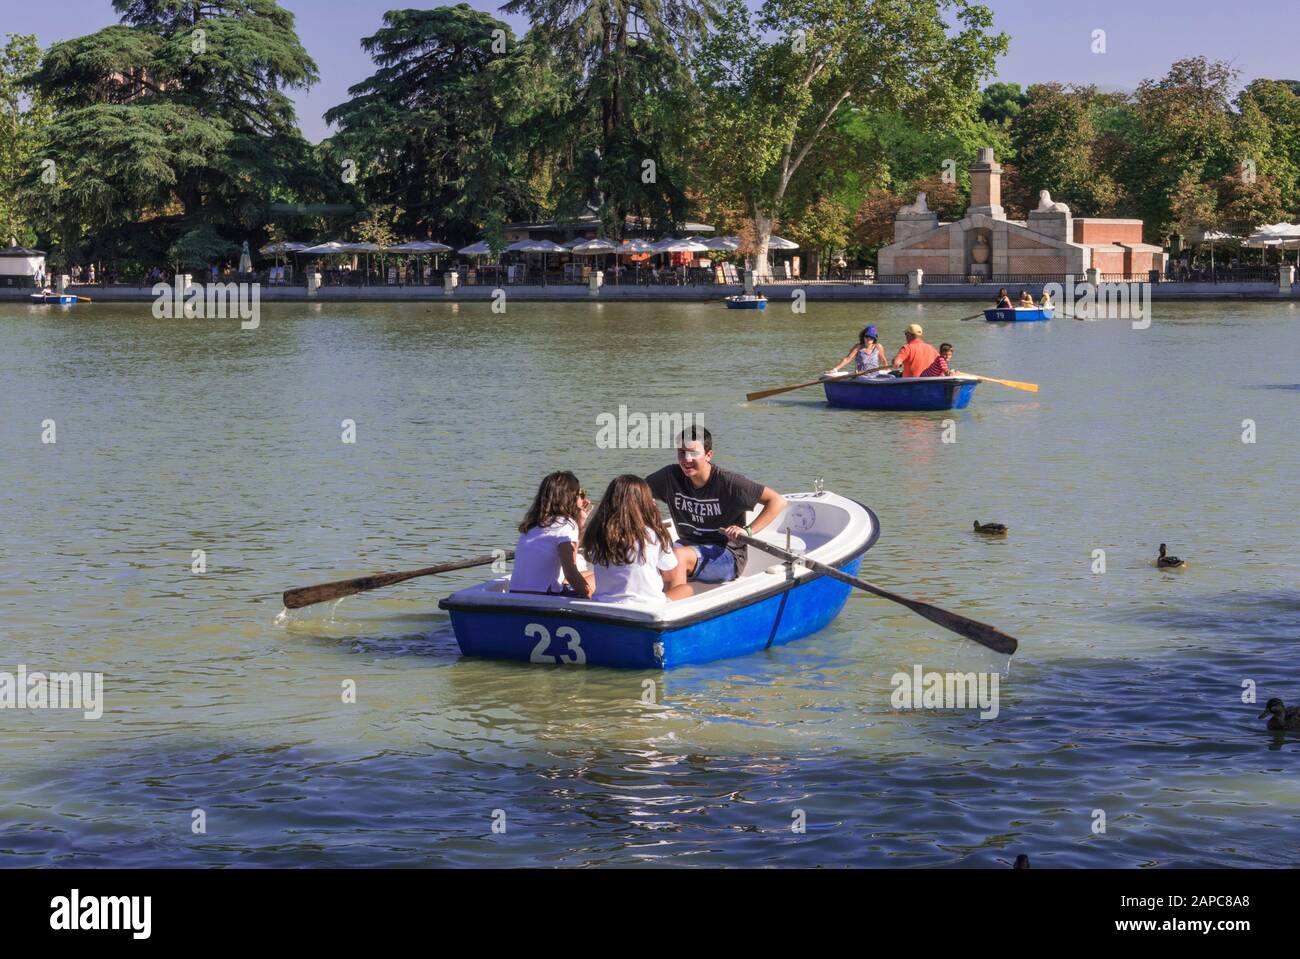 Paseos en bote en el lago del Parque del Retiro, Madrid, España Foto de stock